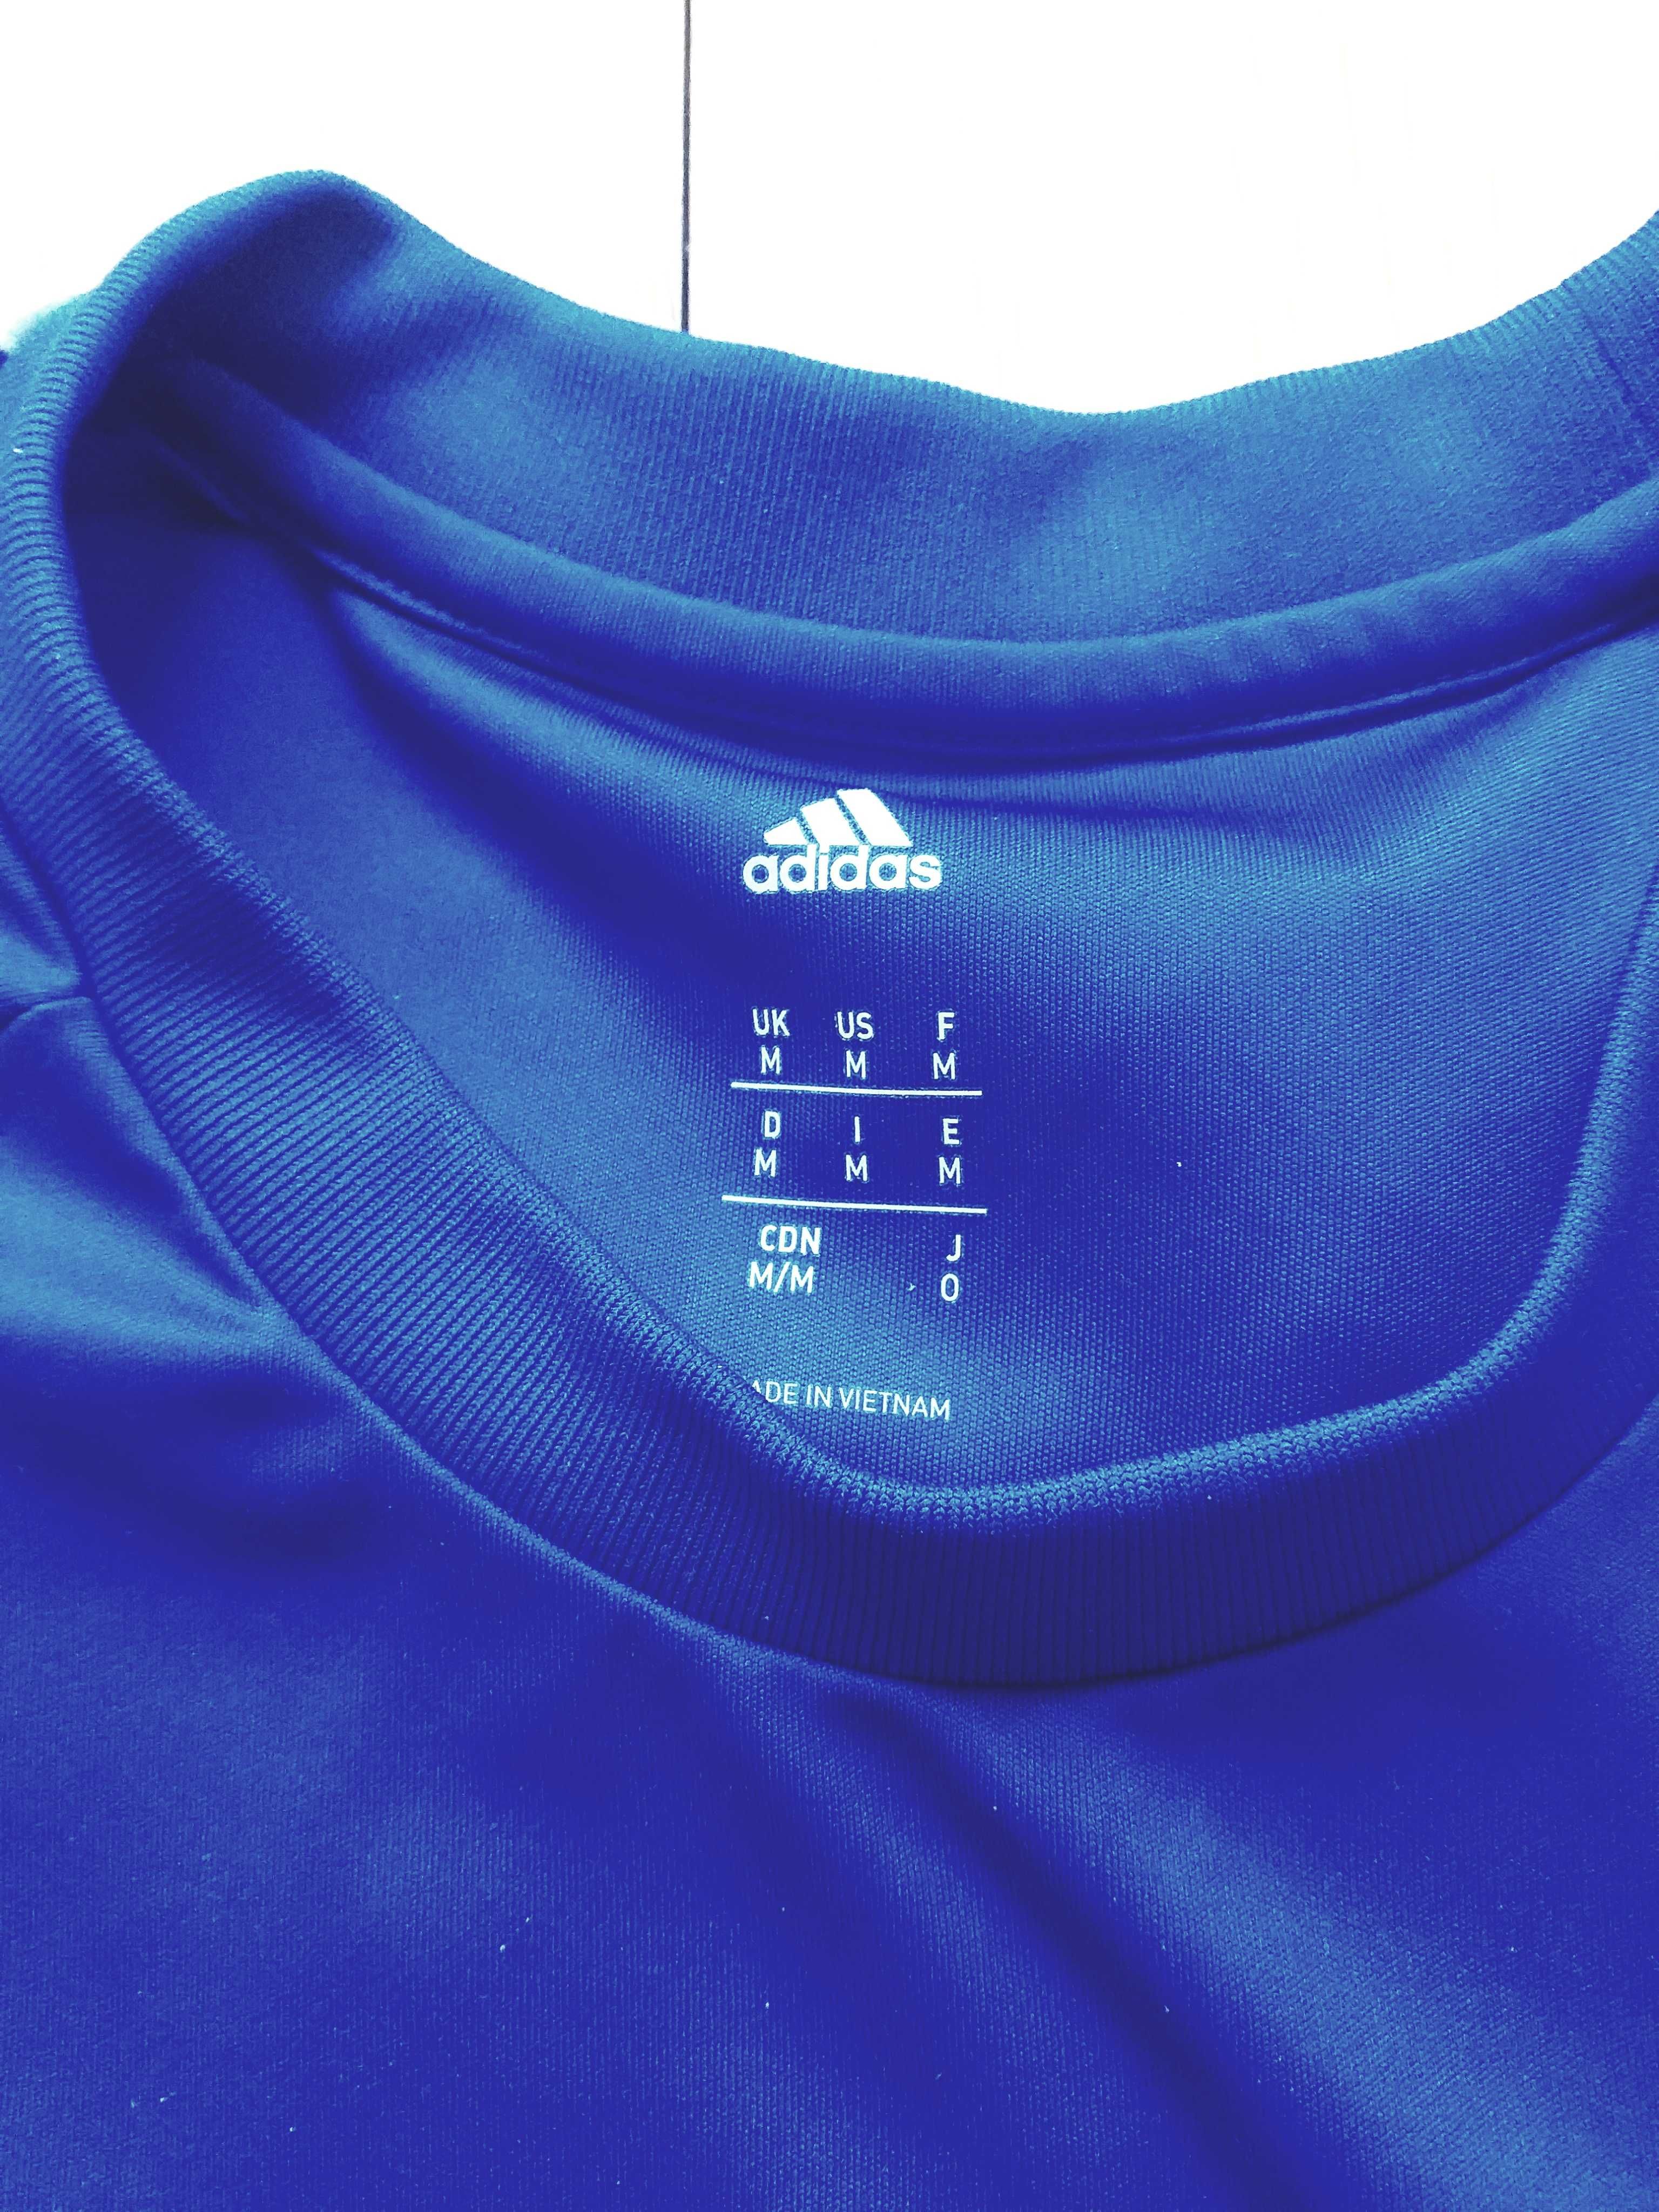 Camisola Adidas oficial da seleção Sueca futebol, Fifa azul